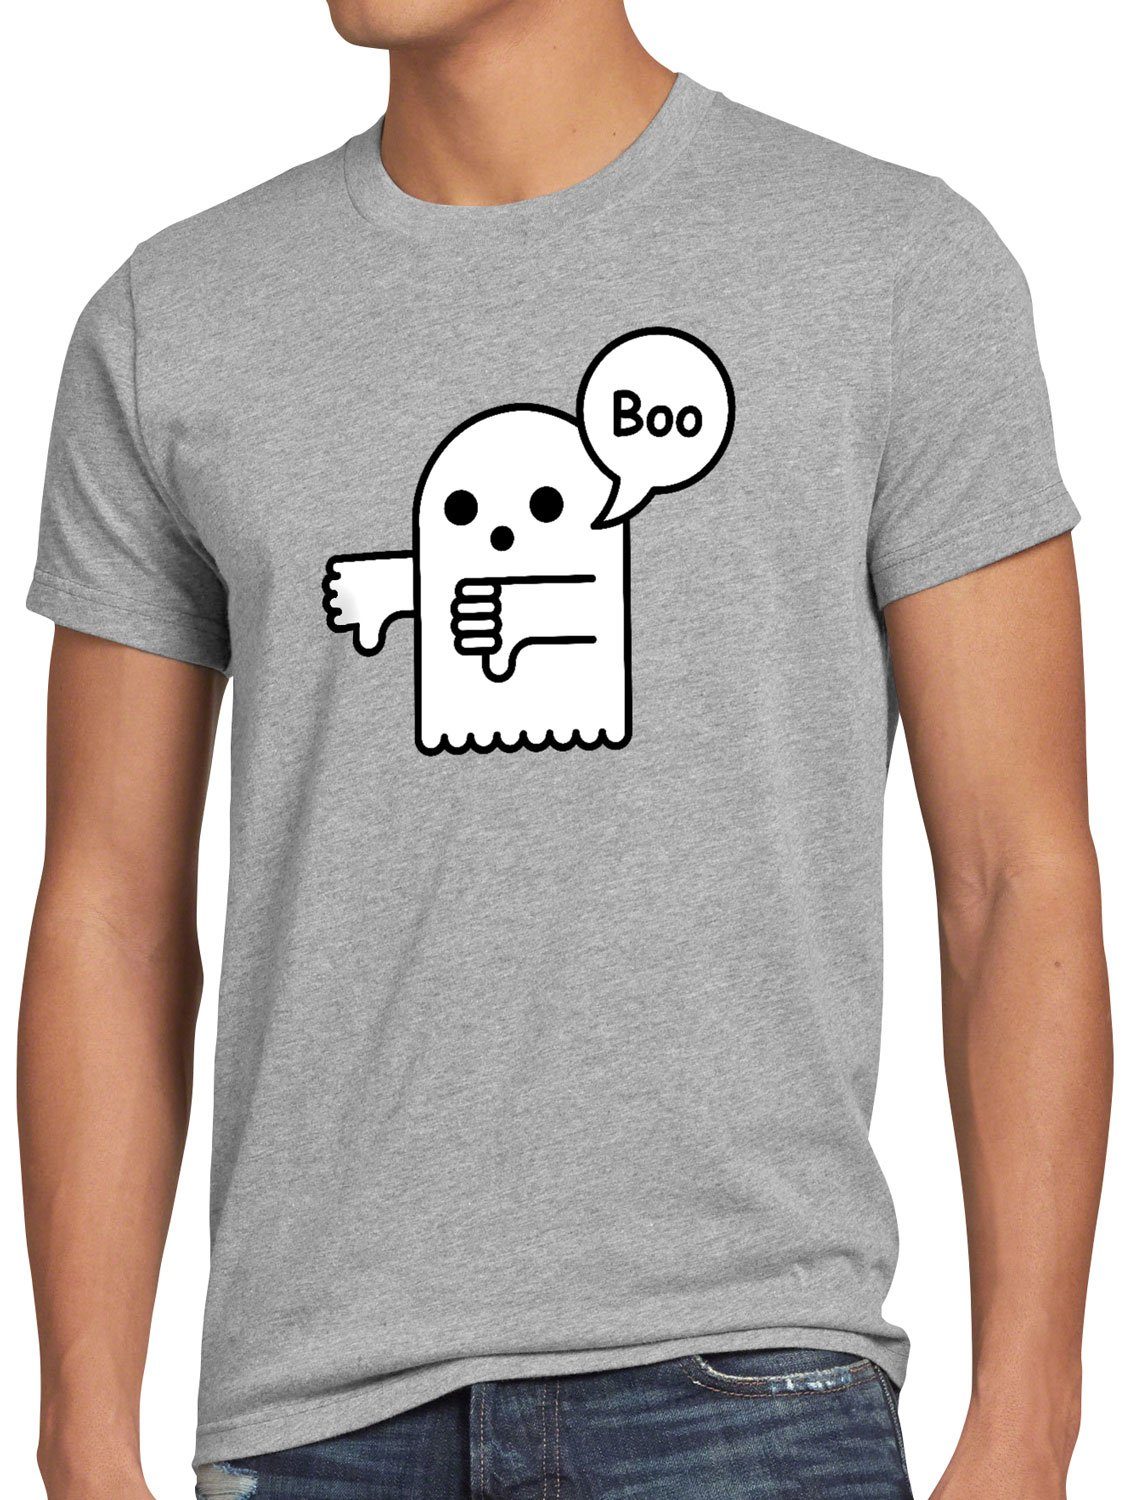 Super Schnäppchenpreis style3 Print-Shirt Helloween Disapproval Halloween Herren Geist spuk Boo T-Shirt gespenst